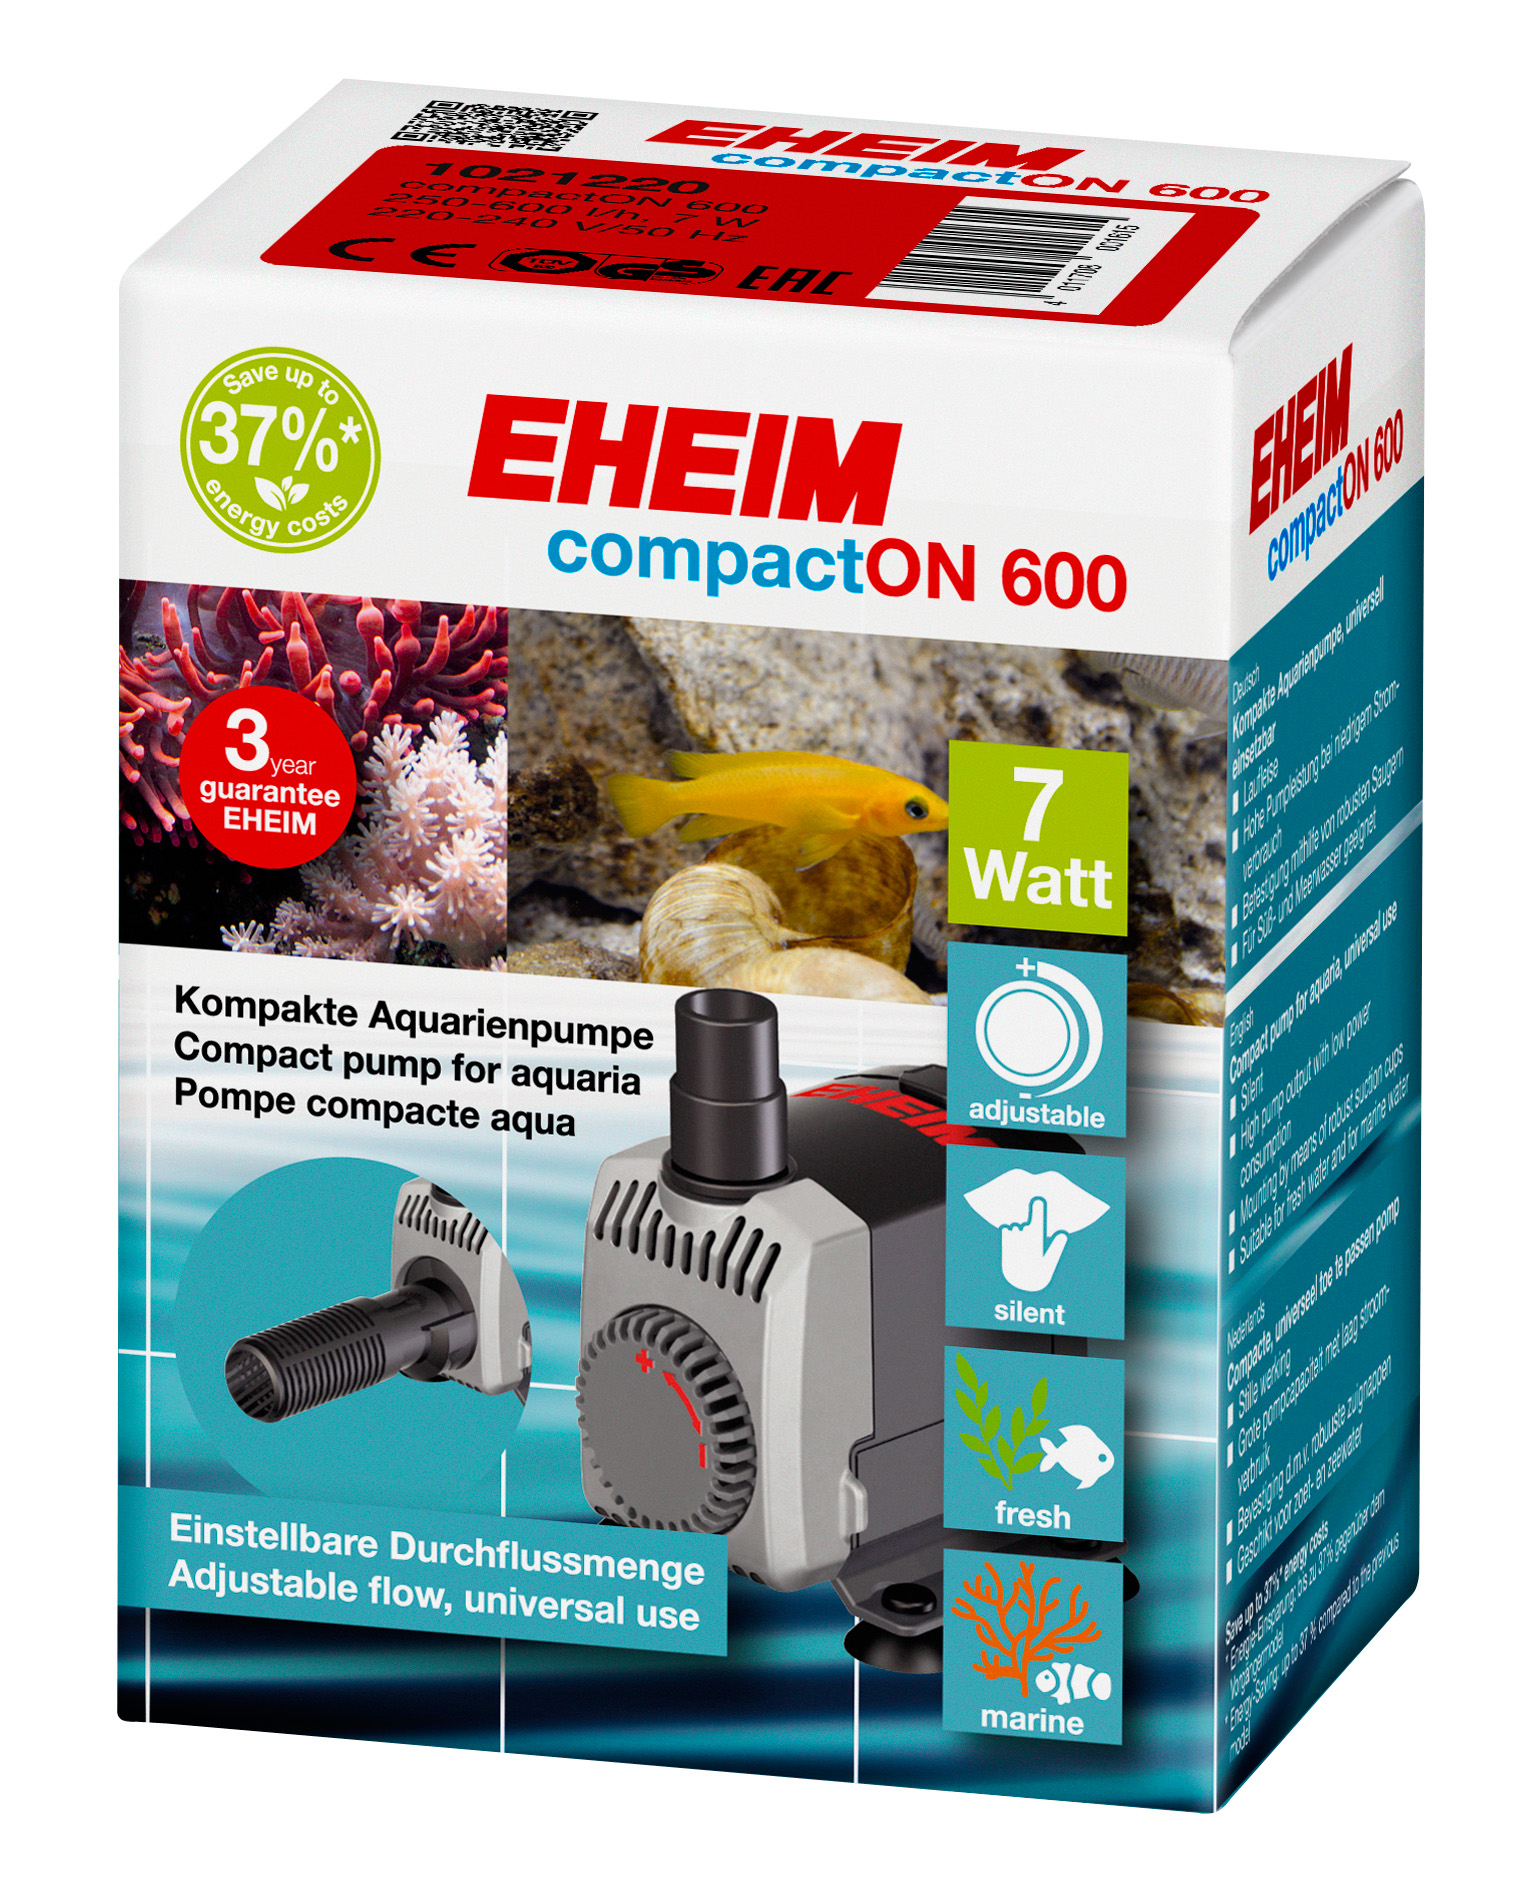 EHEIM compactON Pumpe 600, 600l/h Wasserpumpe, Förderhöhe 1m, 7W